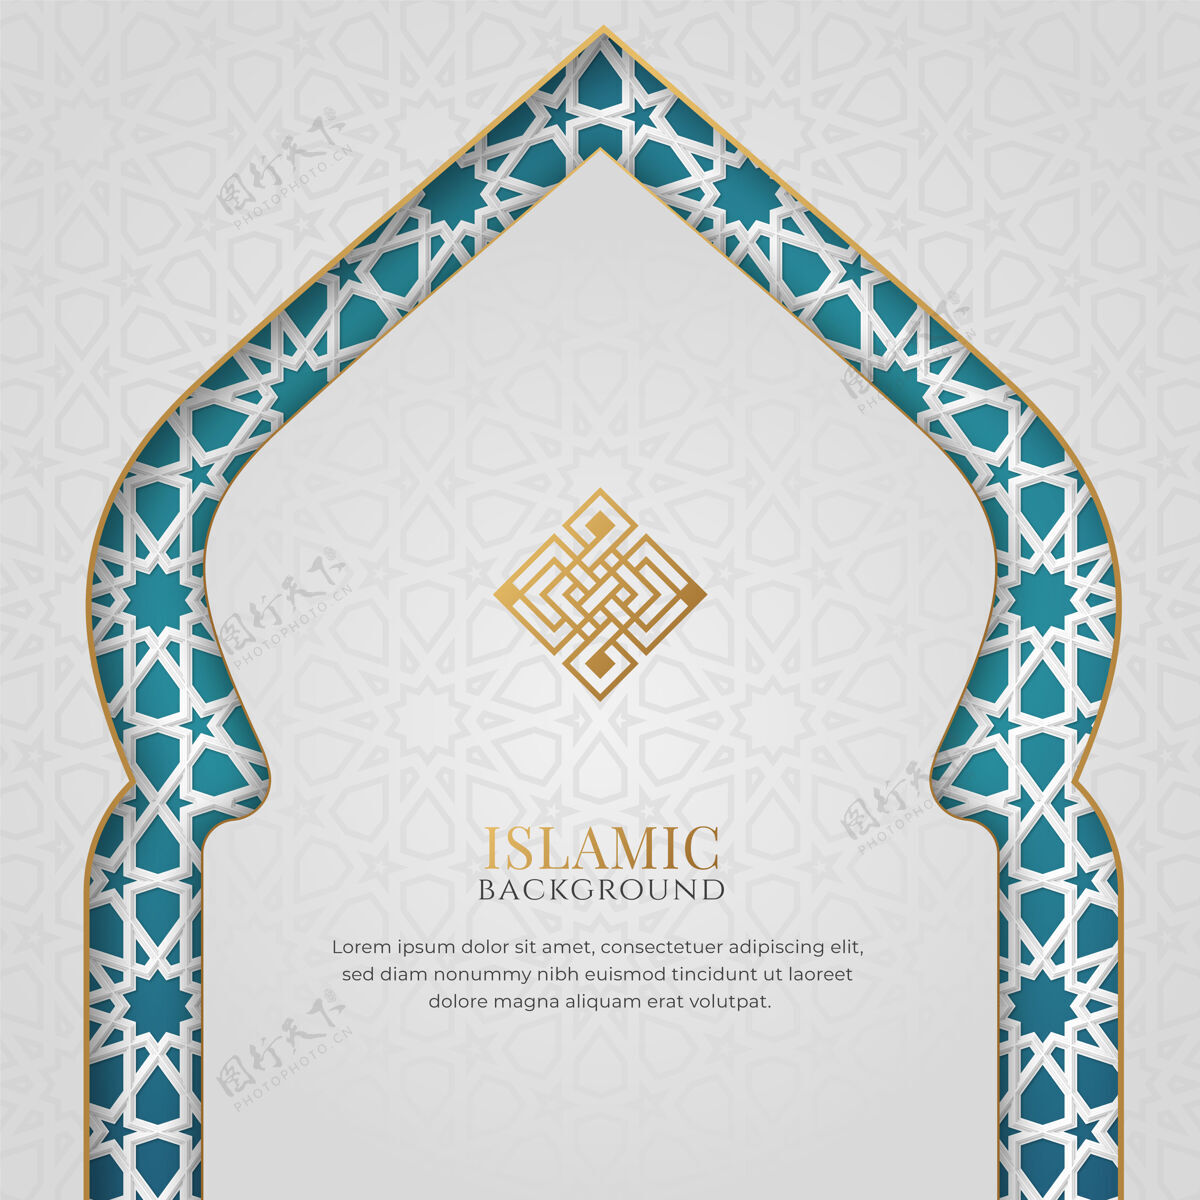 阿拉伯白色和蓝色的豪华伊斯兰背景与装饰拱门框架和模式装饰伊斯兰框架